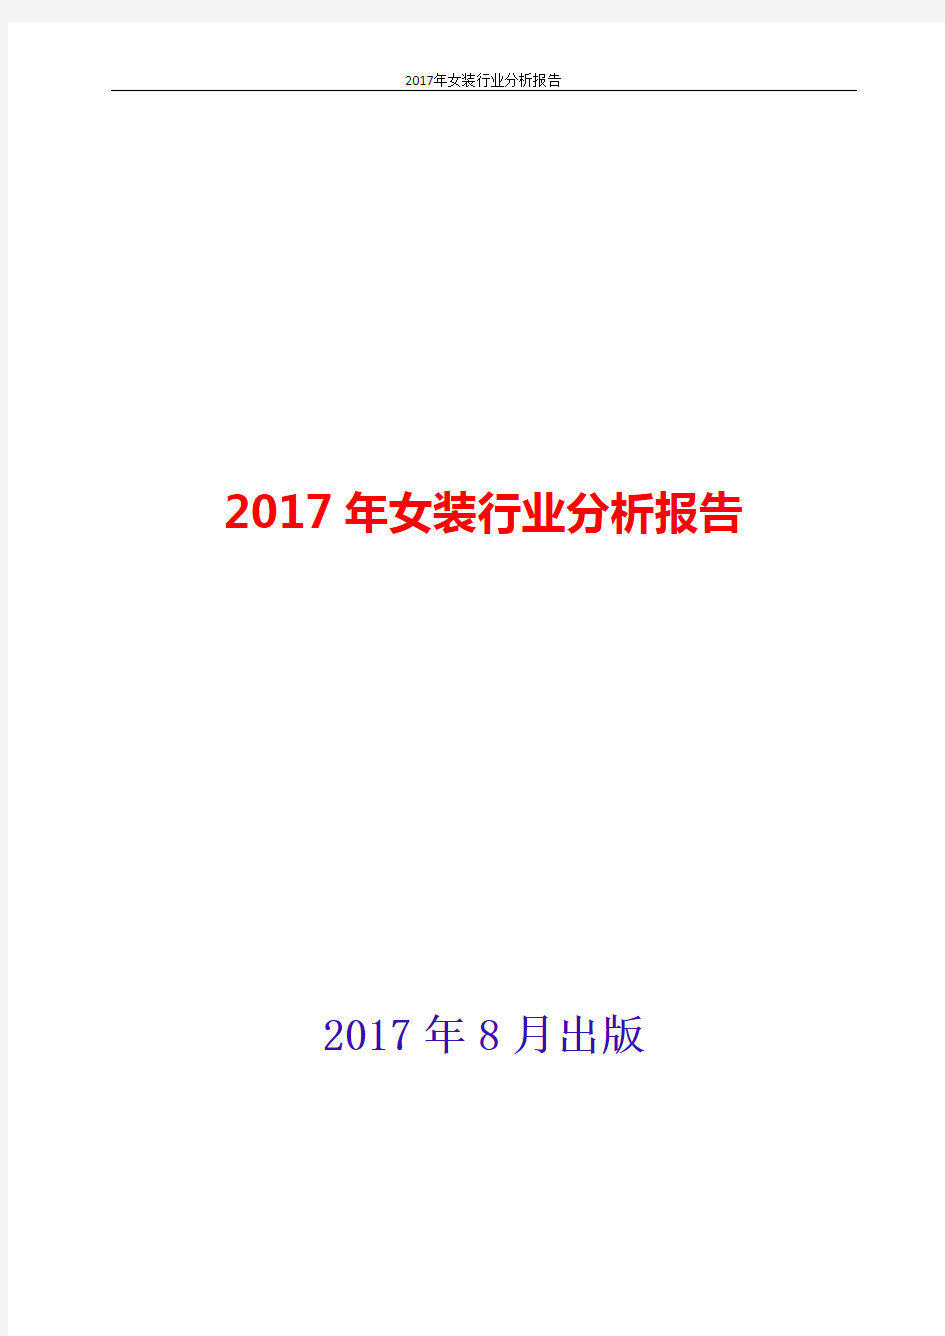 女装行业分析报告2017-2018年版